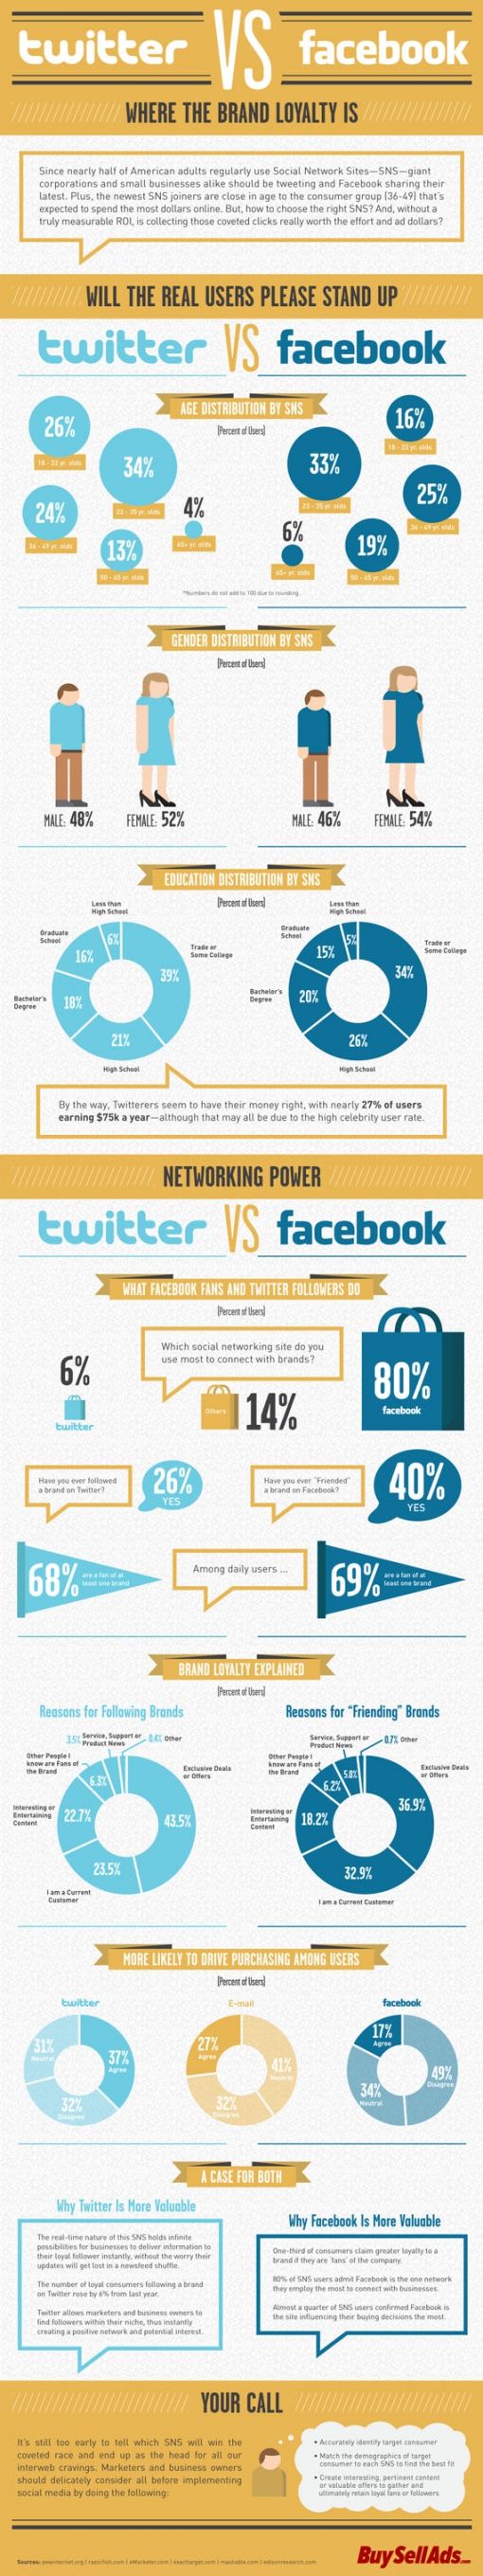 twitter-vs-facebook-infographic.jpg